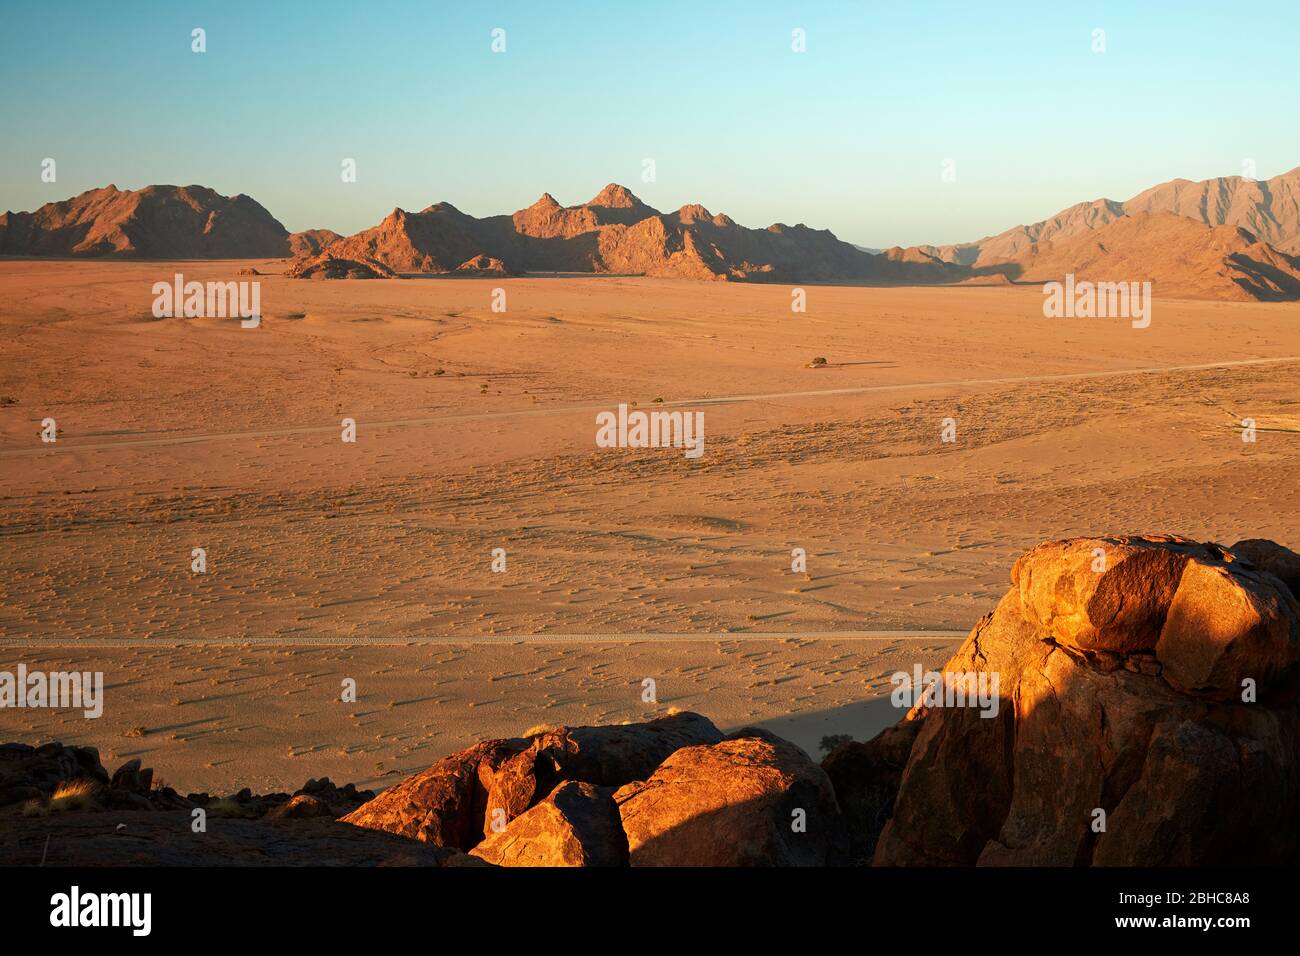 Vista de la llanura y las montañas desde lo alto en un koppie de roca sobre el campamento del desierto, Sesriem, desierto de Namib, Namibia, África Foto de stock